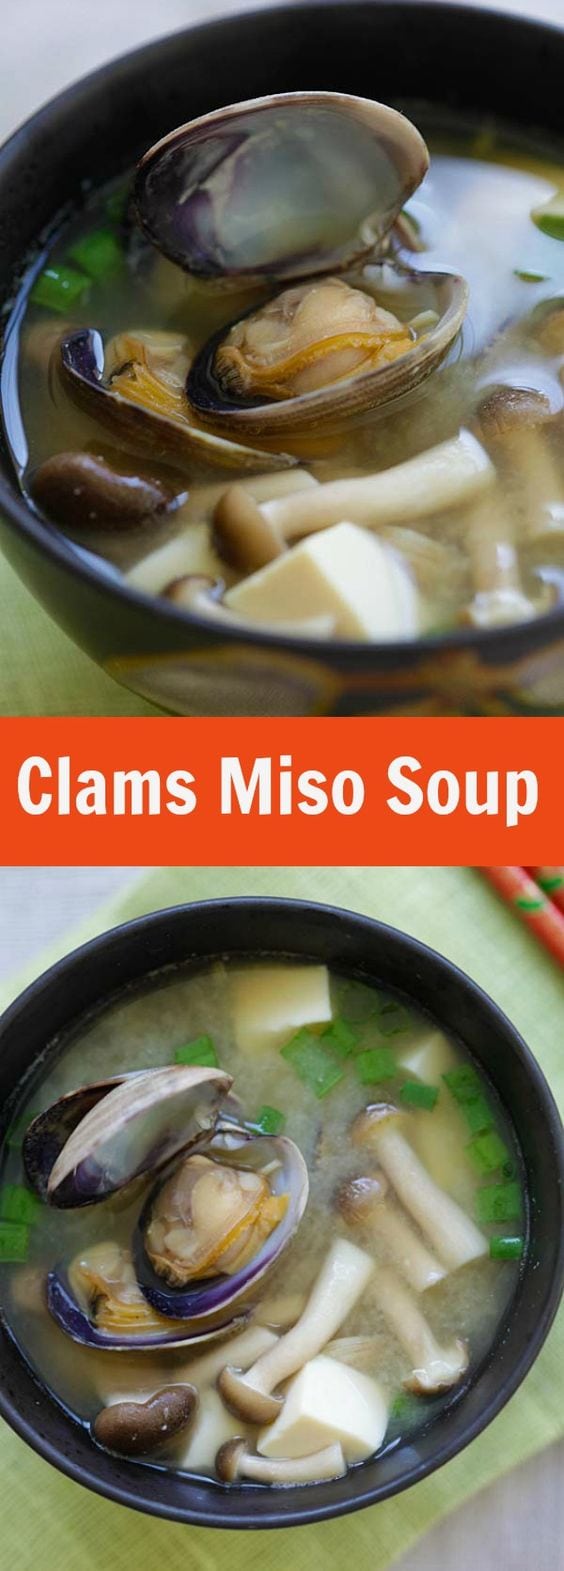 Asari Miso Soup - soupe miso japonaise facile avec des palourdes de Manille.  Si saumâtre, savoureux, fait en moins de 15 minutes et si bon goût!  |  rasamalaysia.com